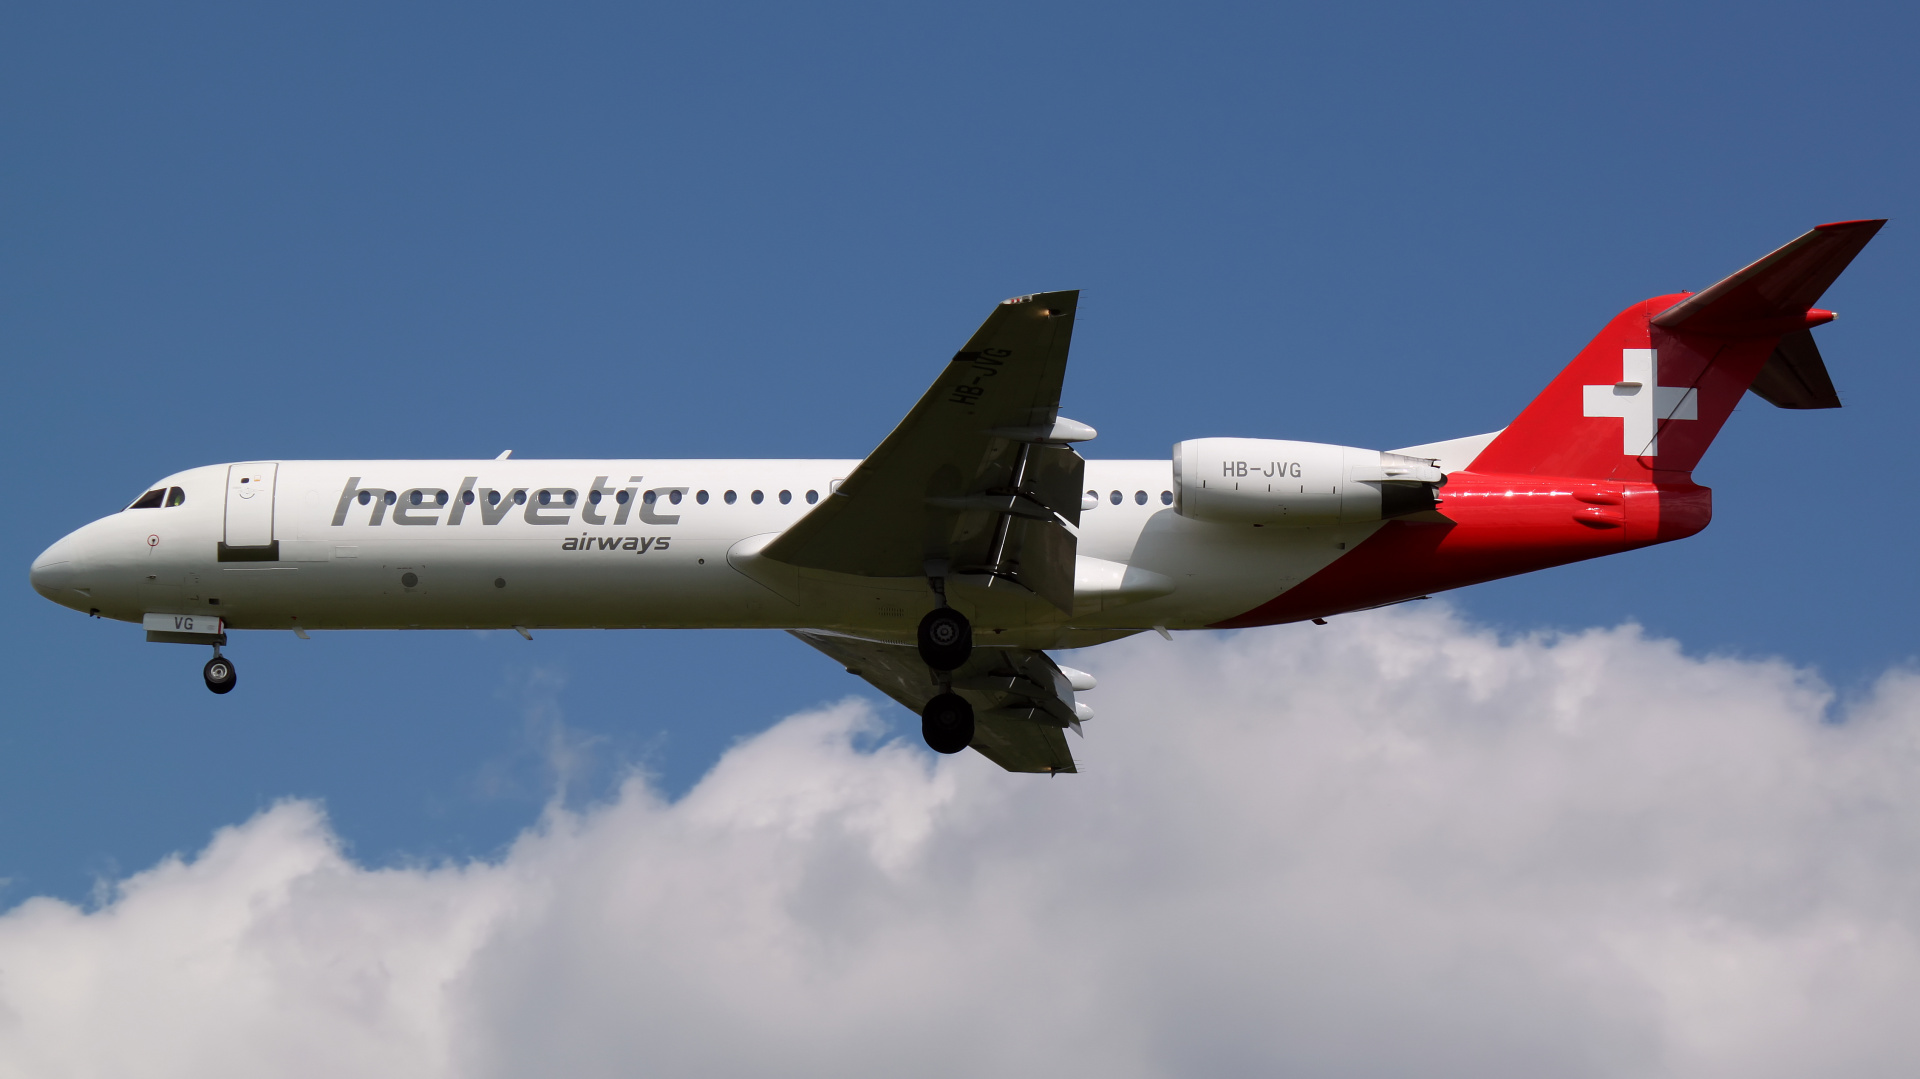 HB-JVG (Aircraft » EPWA Spotting » Fokker 100 » Helvetic Airways)